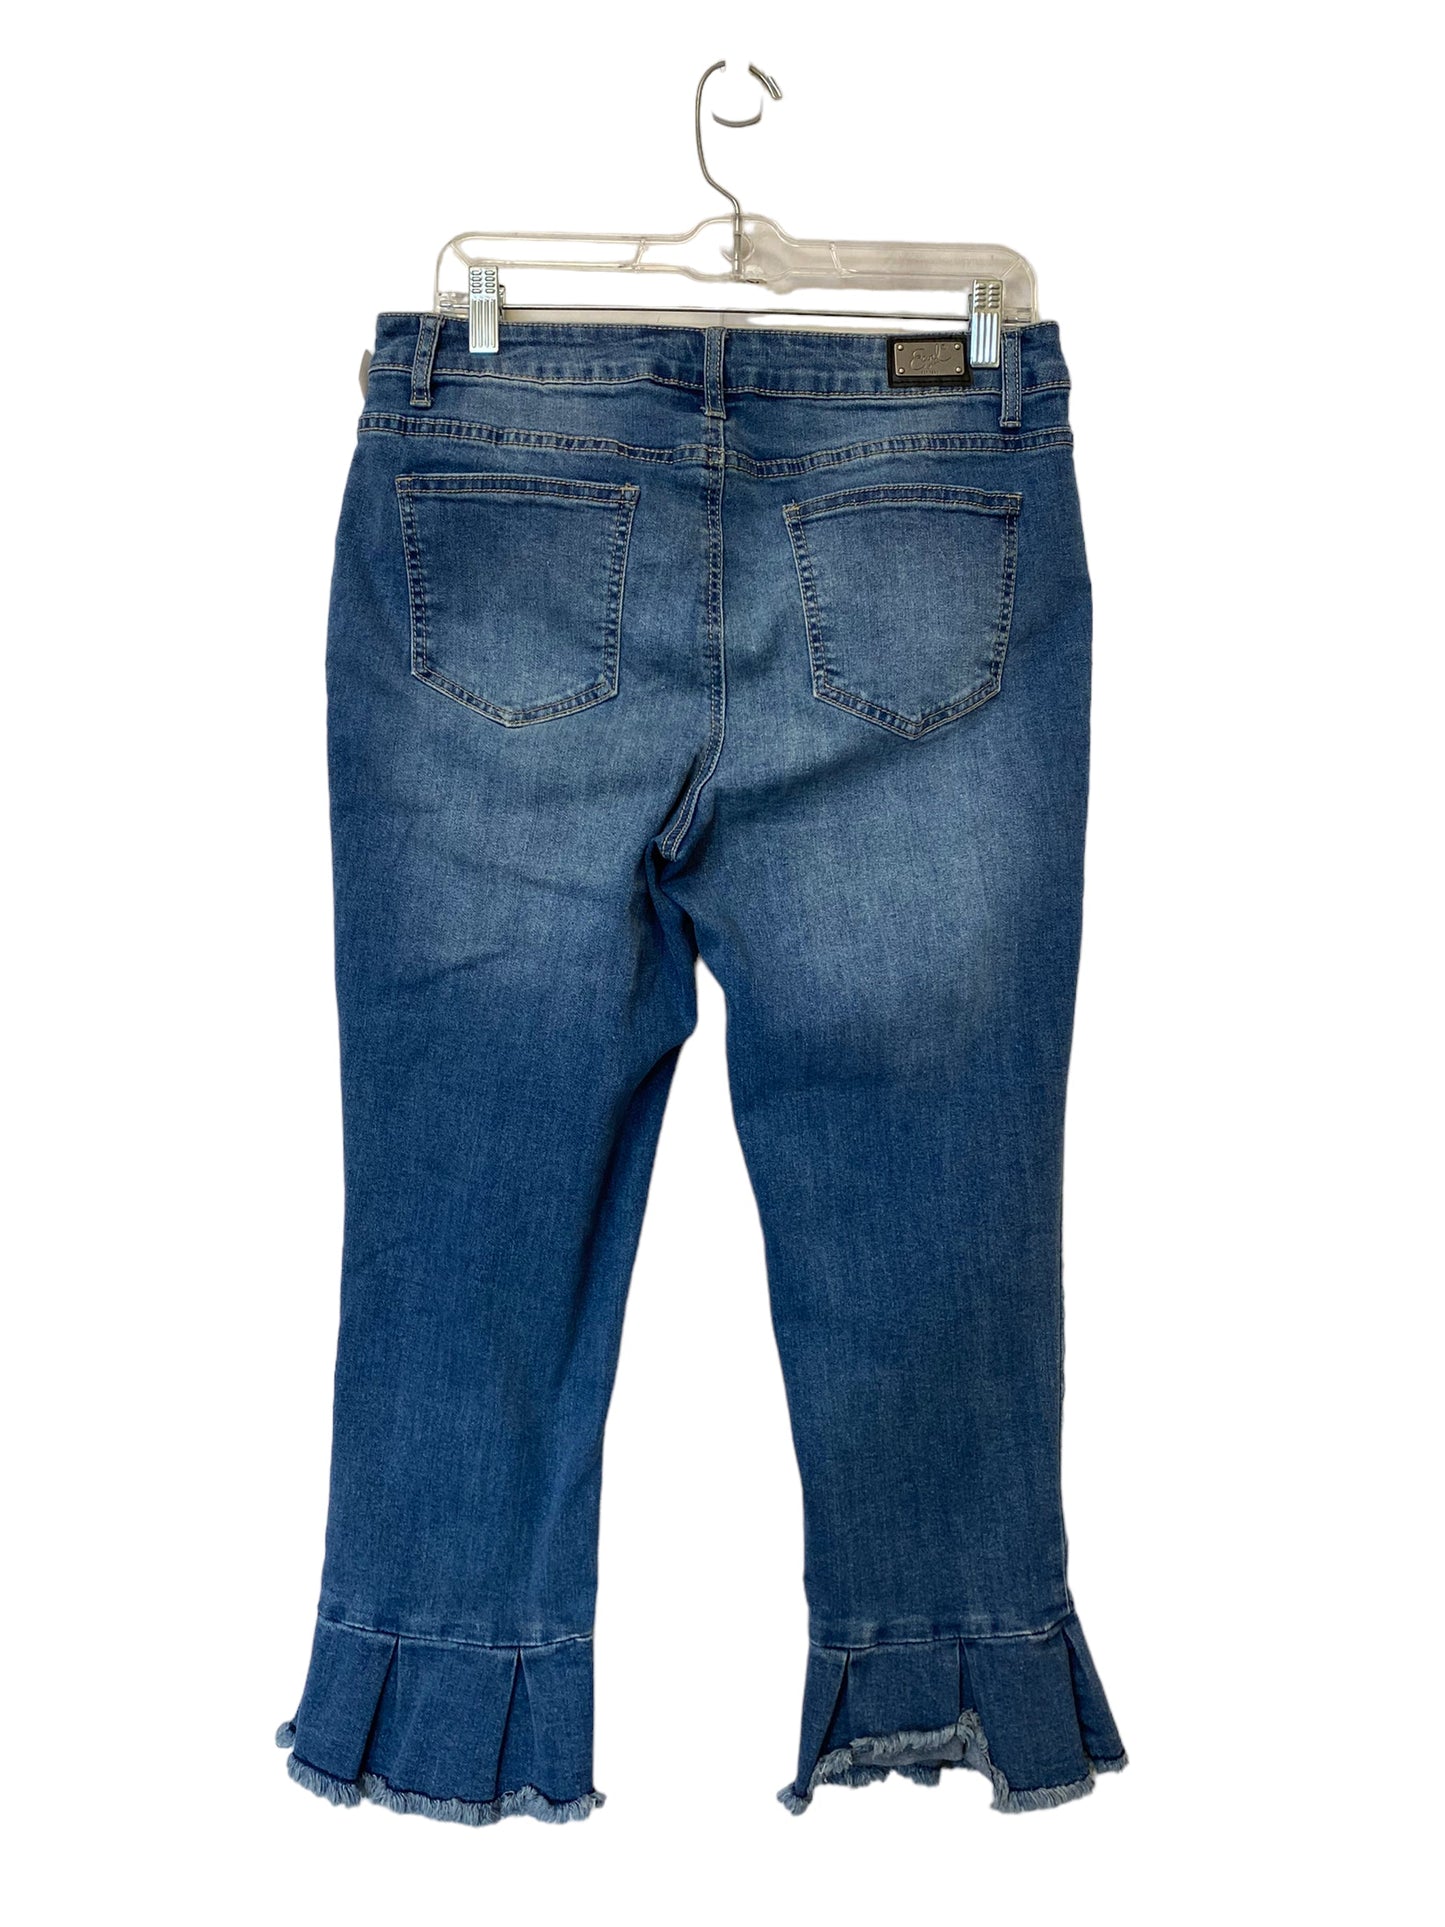 Jeans Cropped By Earl Jean  Size: 12